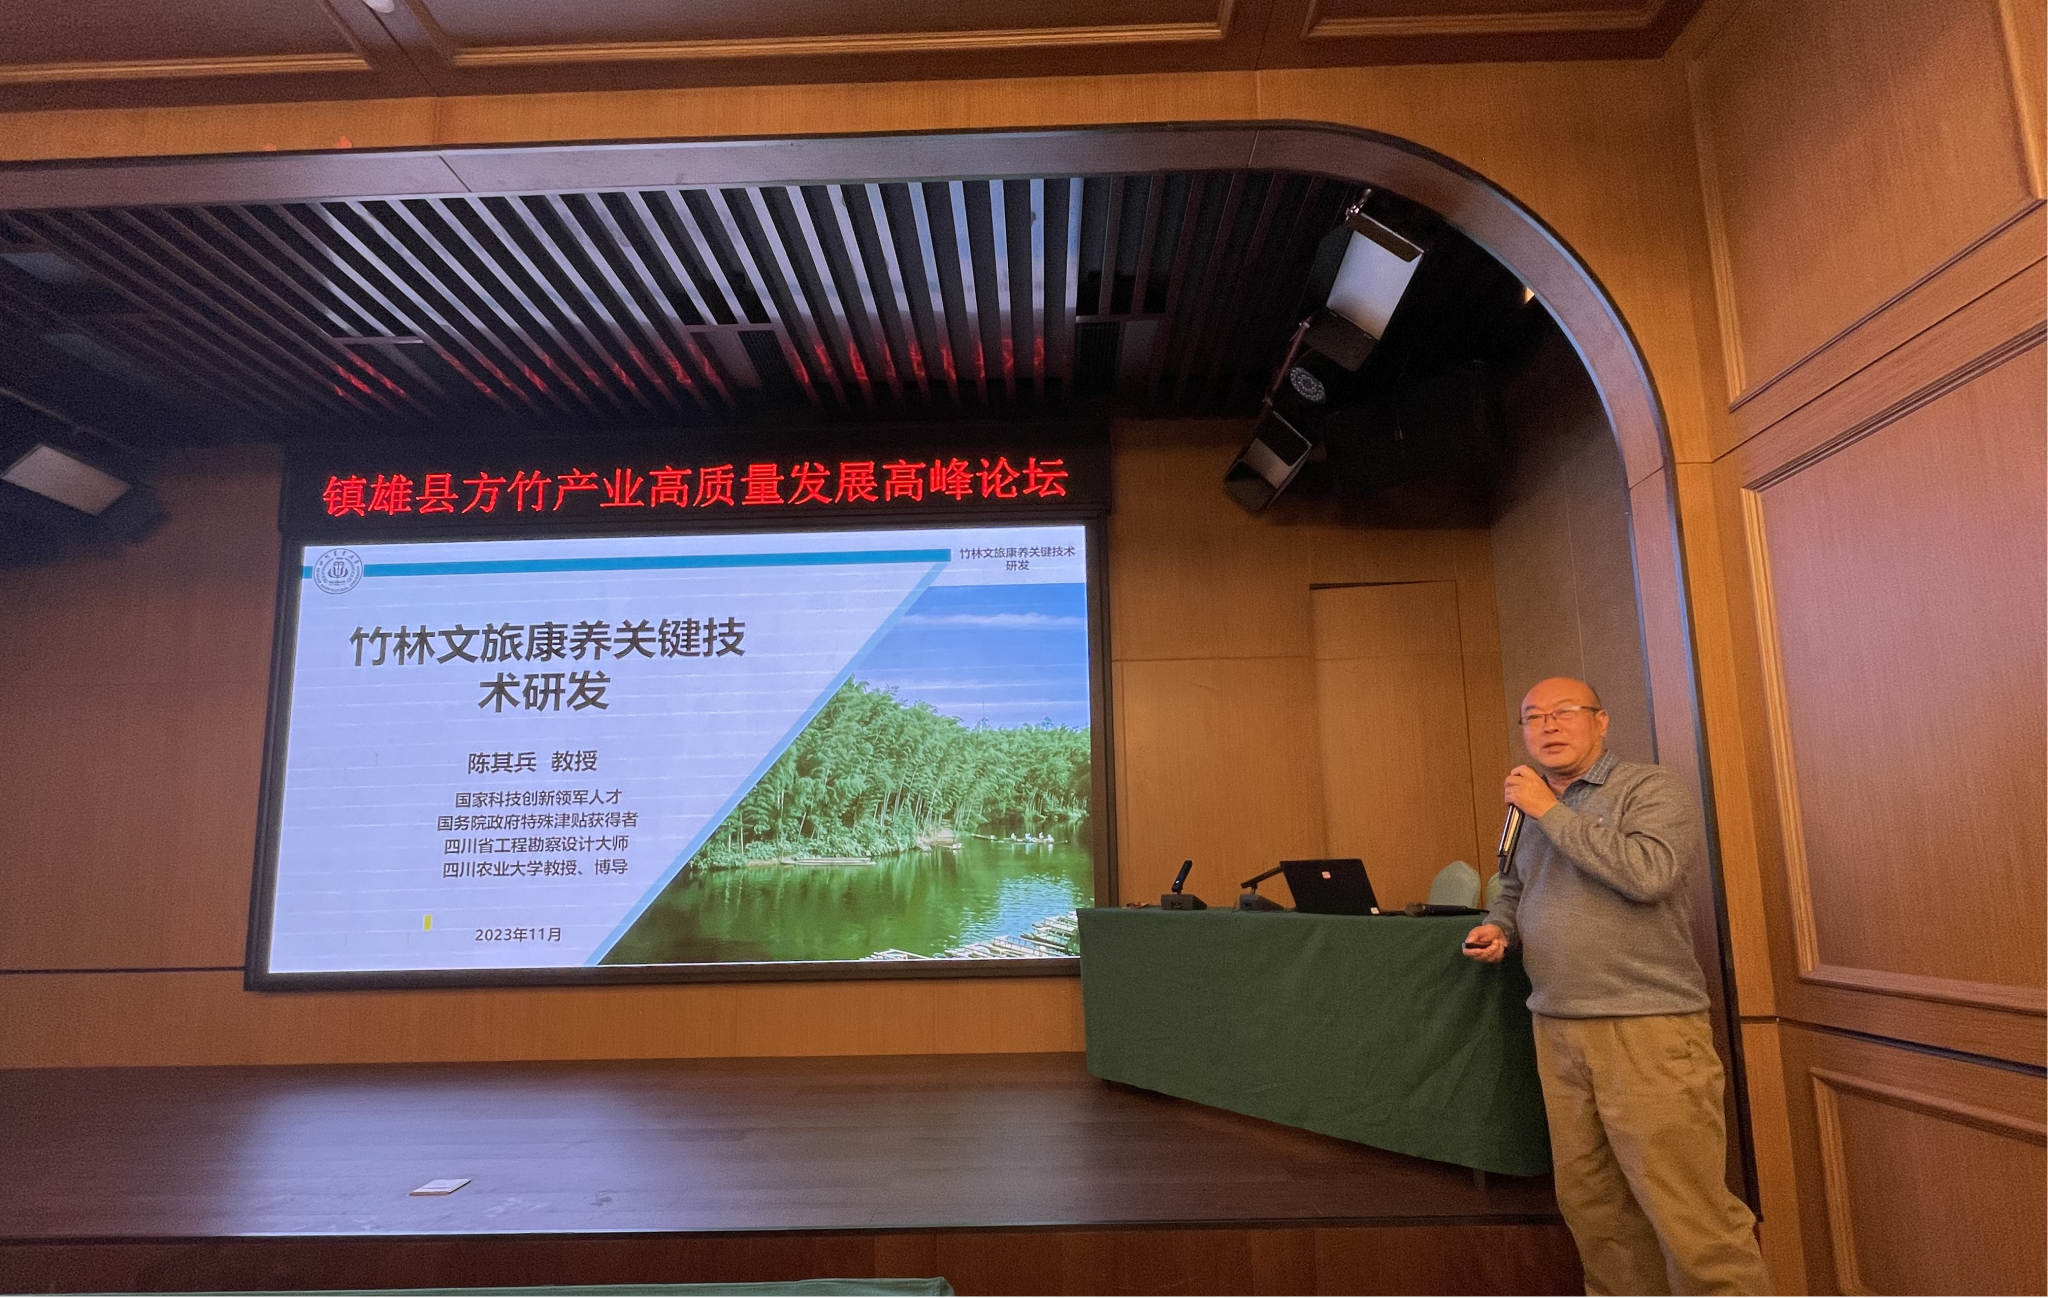 风景园林学院专家参加云南镇雄方竹产业高质量发展高峰论坛并作专题报告